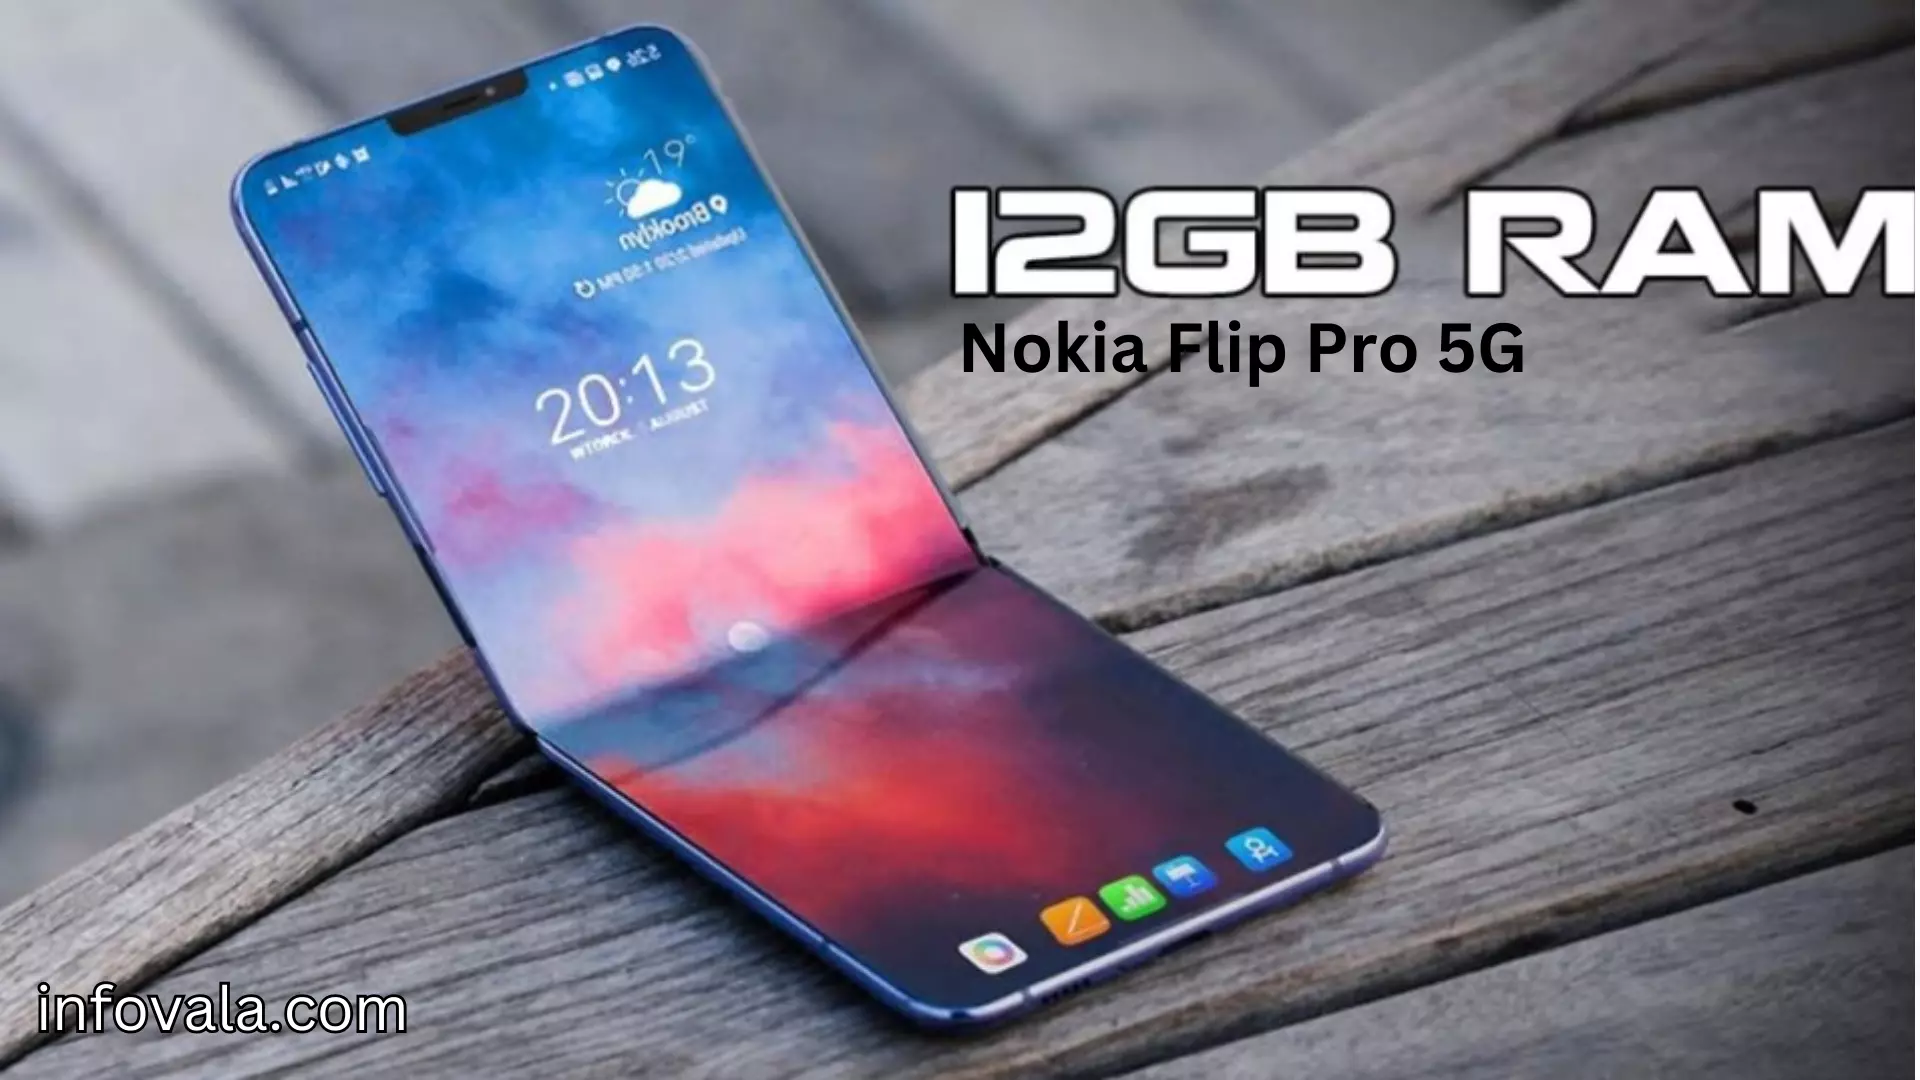 Nokia Flip Pro 5G